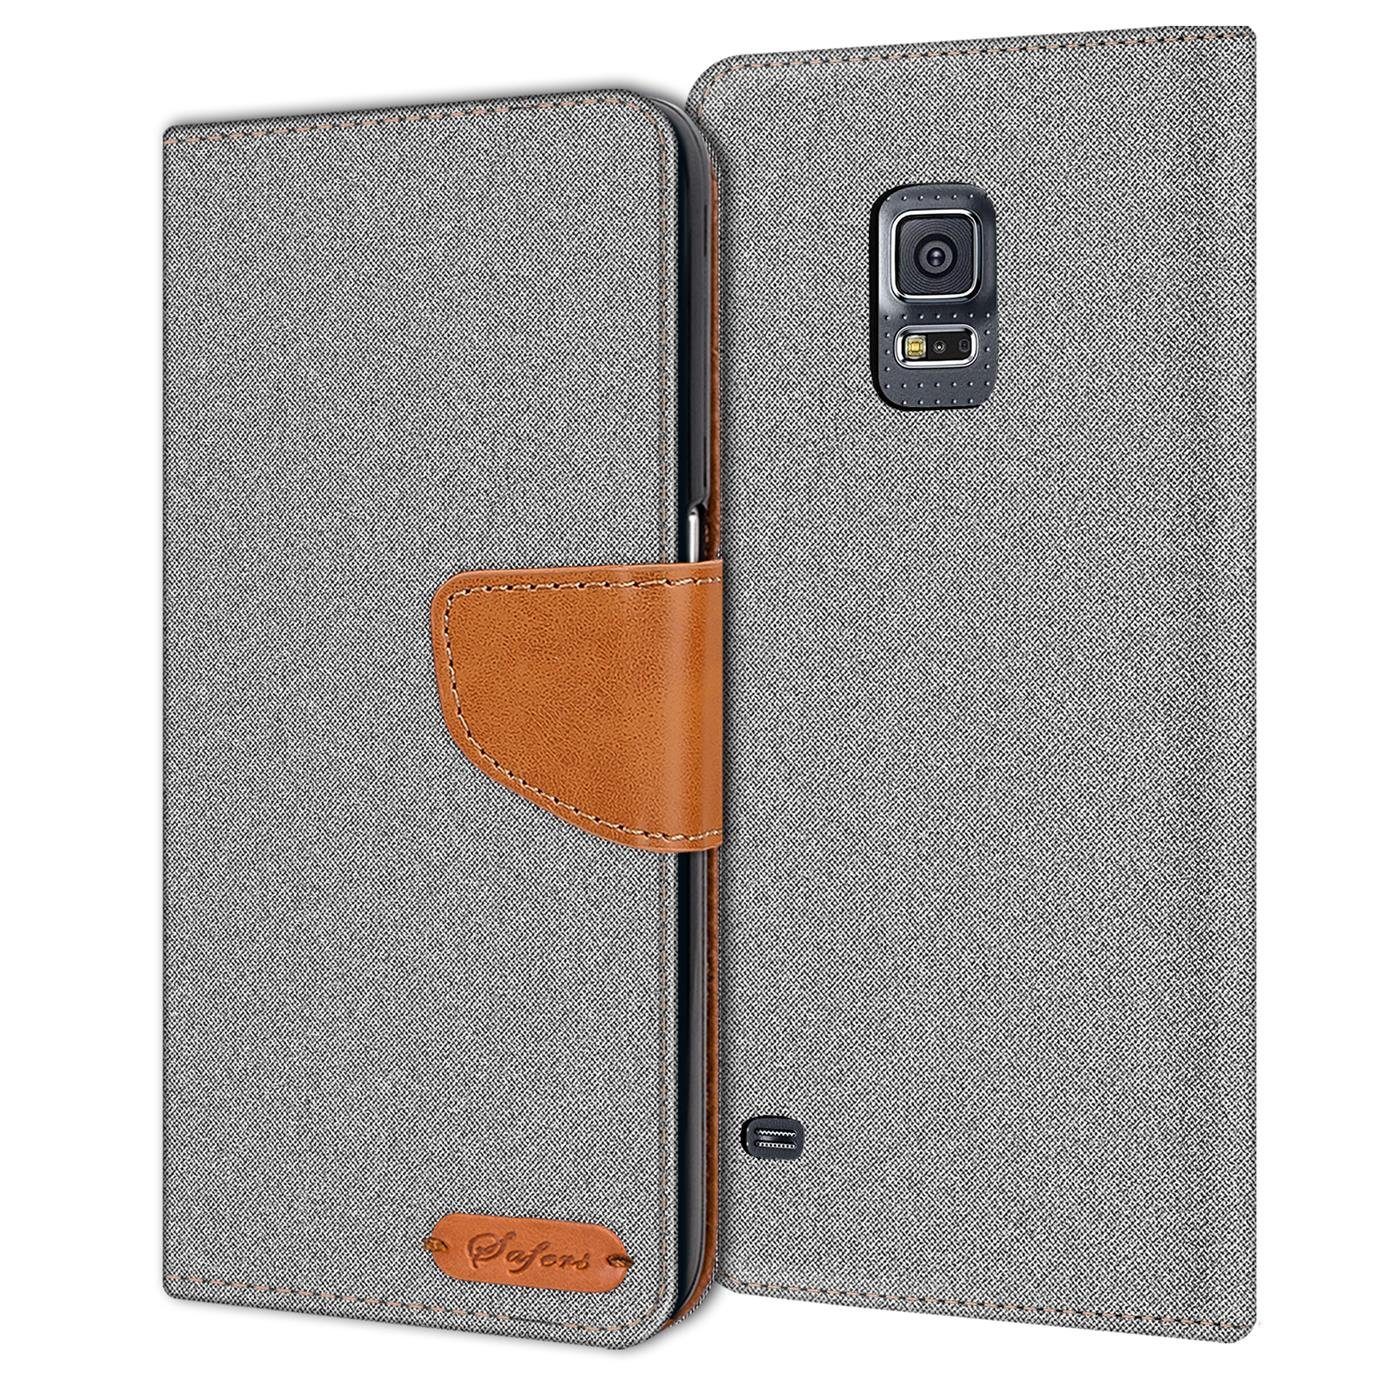 CoolGadget Handyhülle Denim Schutzhülle Flip Case für Samsung Galaxy S5 / S5  Neo 5,1 Zoll, Book Cover Handy Tasche Hülle für Samsung S5 Klapphülle